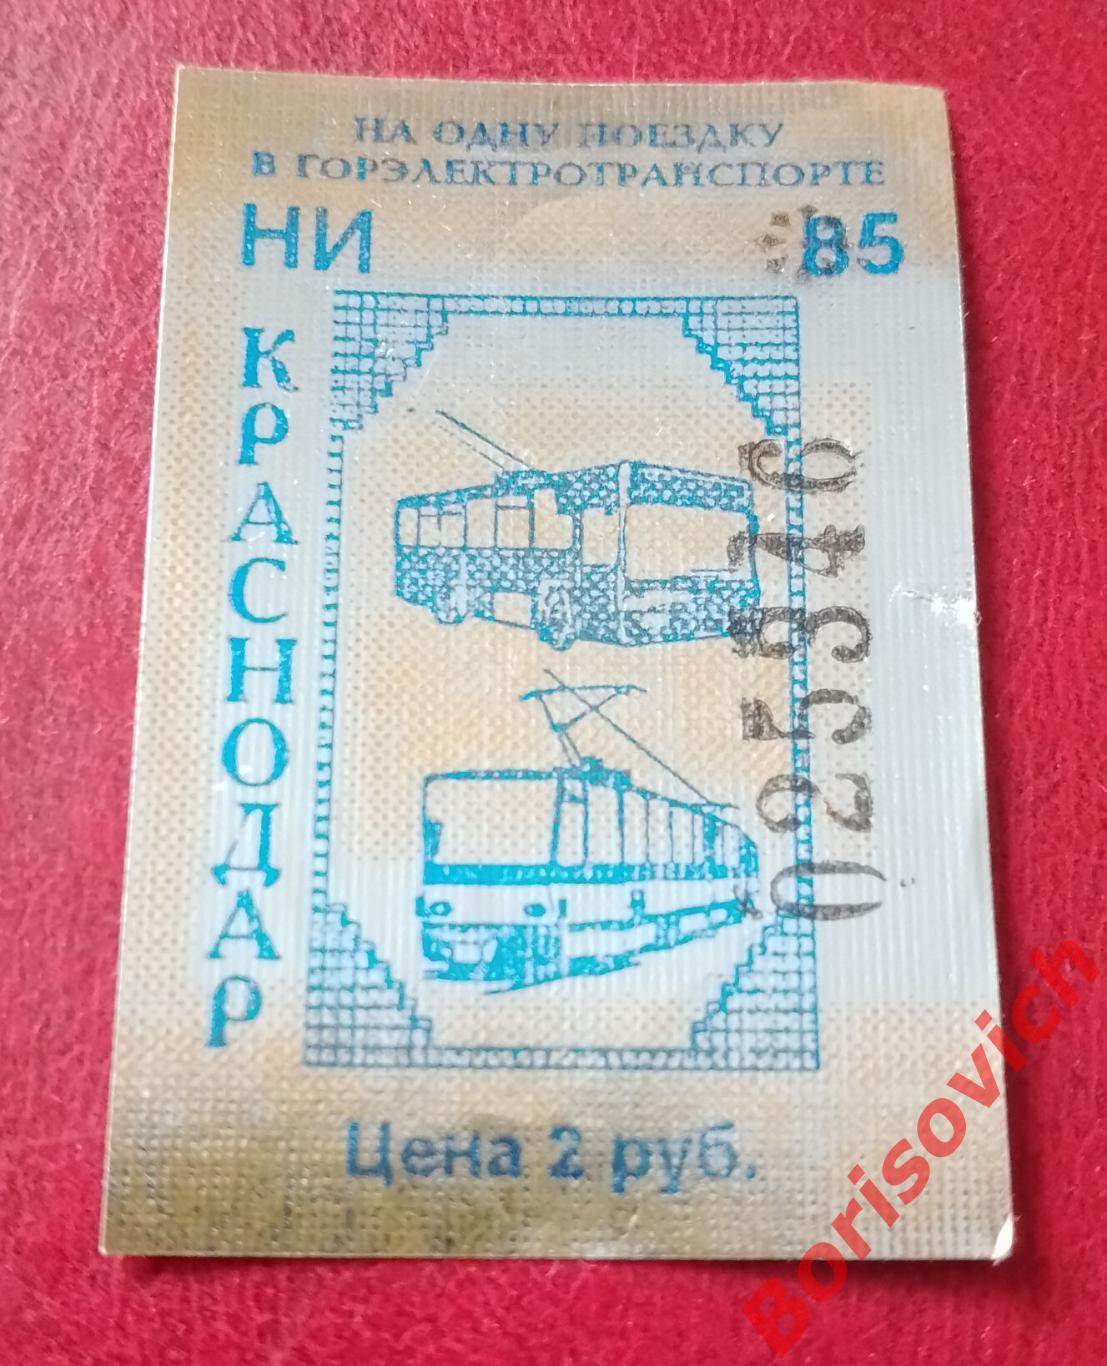 Билет на одну поездку в Горэлектротранспорте в г. Краснодар